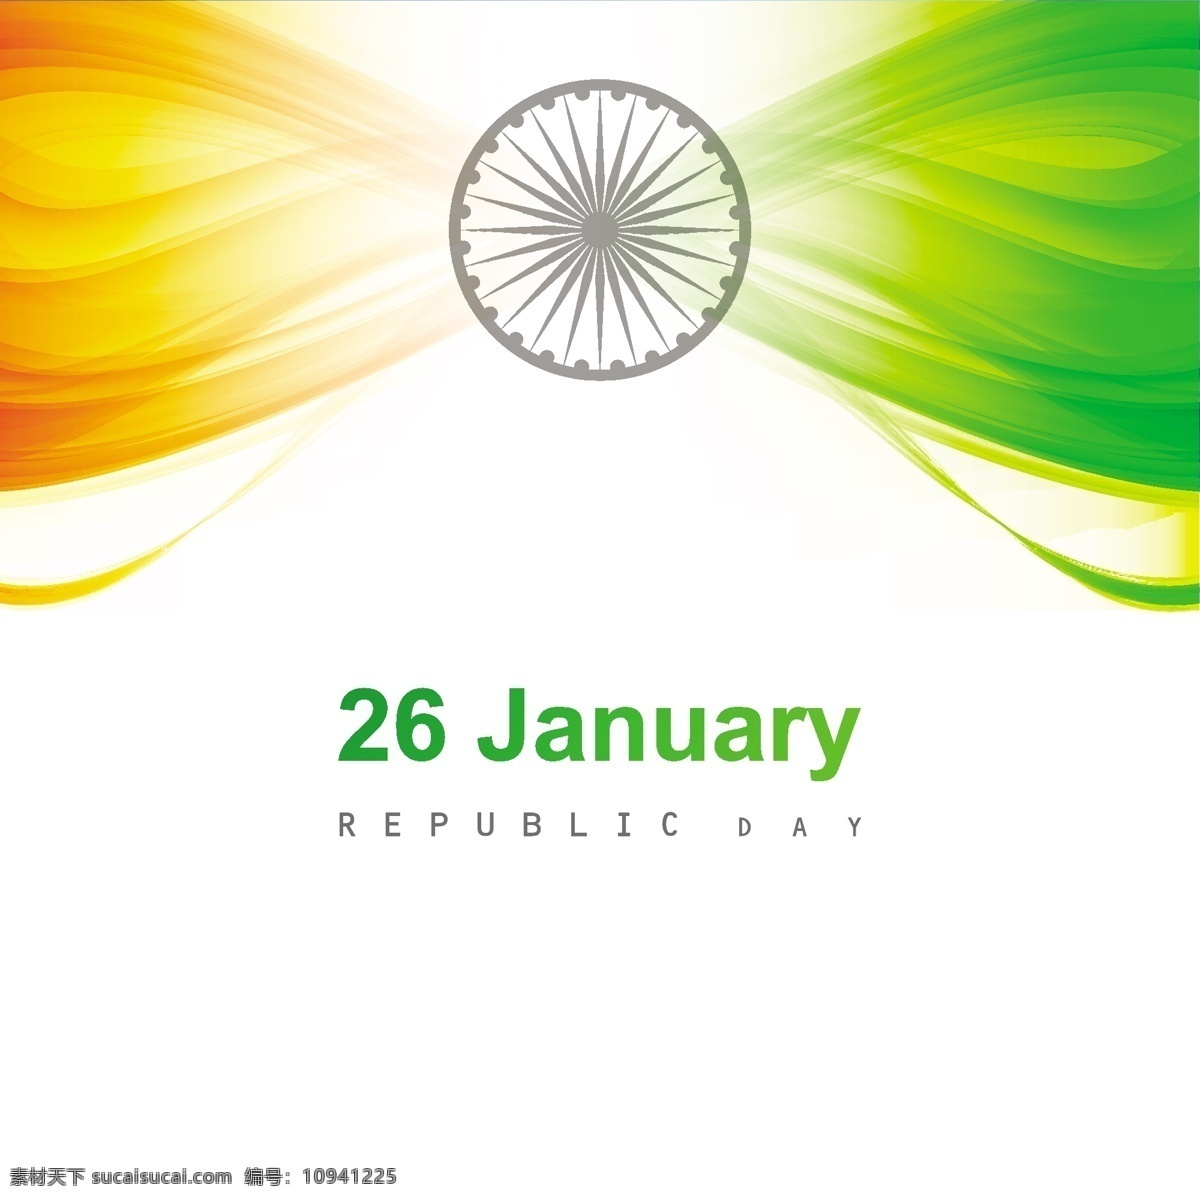 闪亮 印度 标志牌 背景 抽象 卡片 旗帜 波 节日 车轮 和平 印度国旗 独立日 国家 自由 一天 政府 波浪 有光泽 爱国 白色